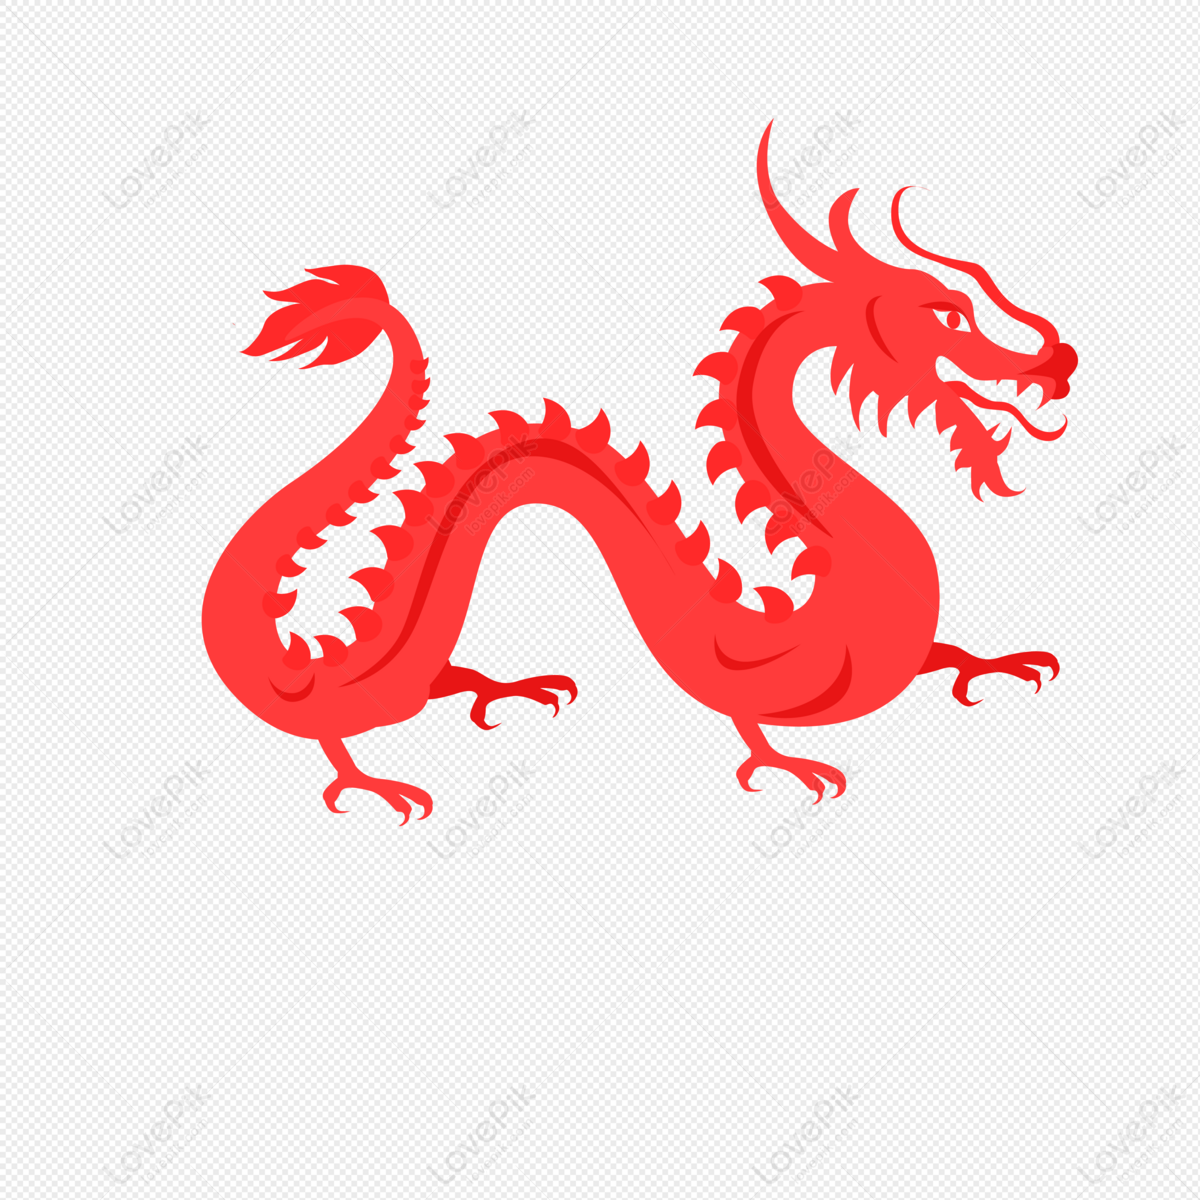 Rồng Trung Quốc: Rồng là một trong những biểu tượng văn hóa quan trọng của Trung Quốc. Với hình dáng lung linh và sức mạnh phi thường, rồng đã trở thành một trong những chủ đề được yêu thích trong nhiếp ảnh. Hãy xem những hình ảnh đẹp về rồng Trung Quốc này.